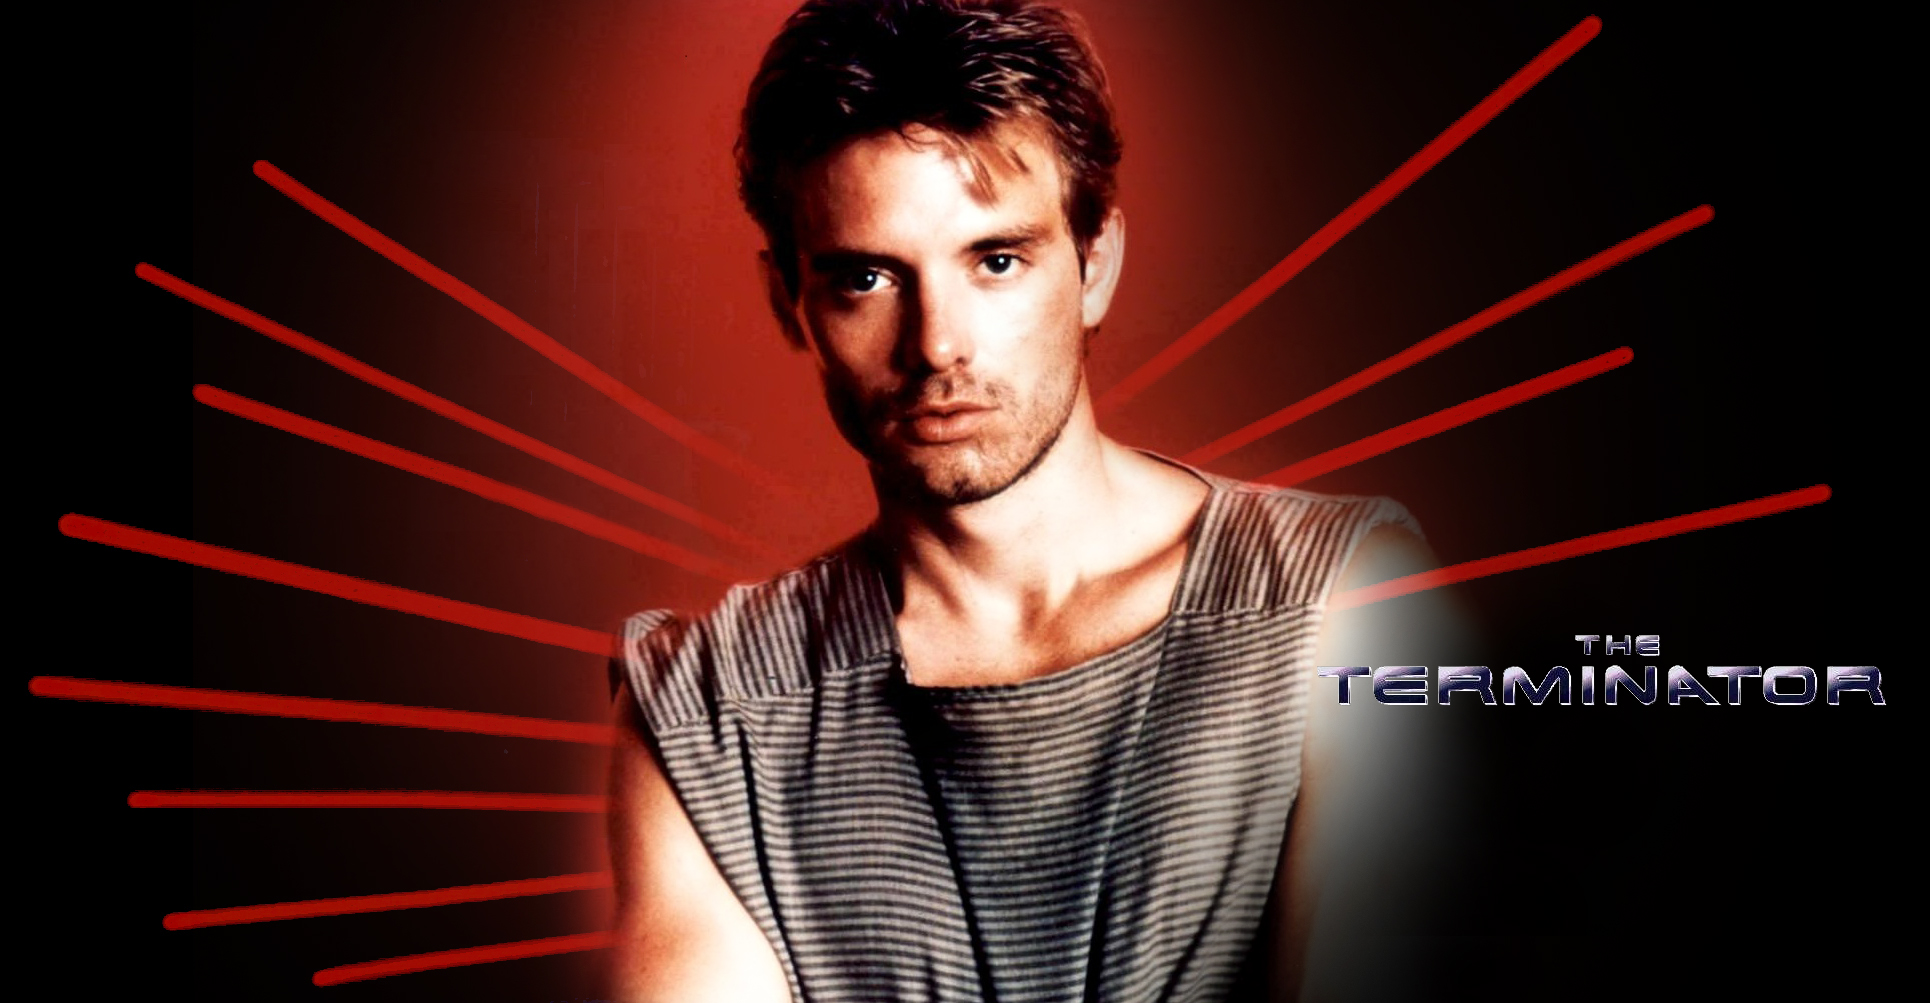 Kyle Reese - Terminator by Iran
Keywords: terminator_art;terminator_wpr